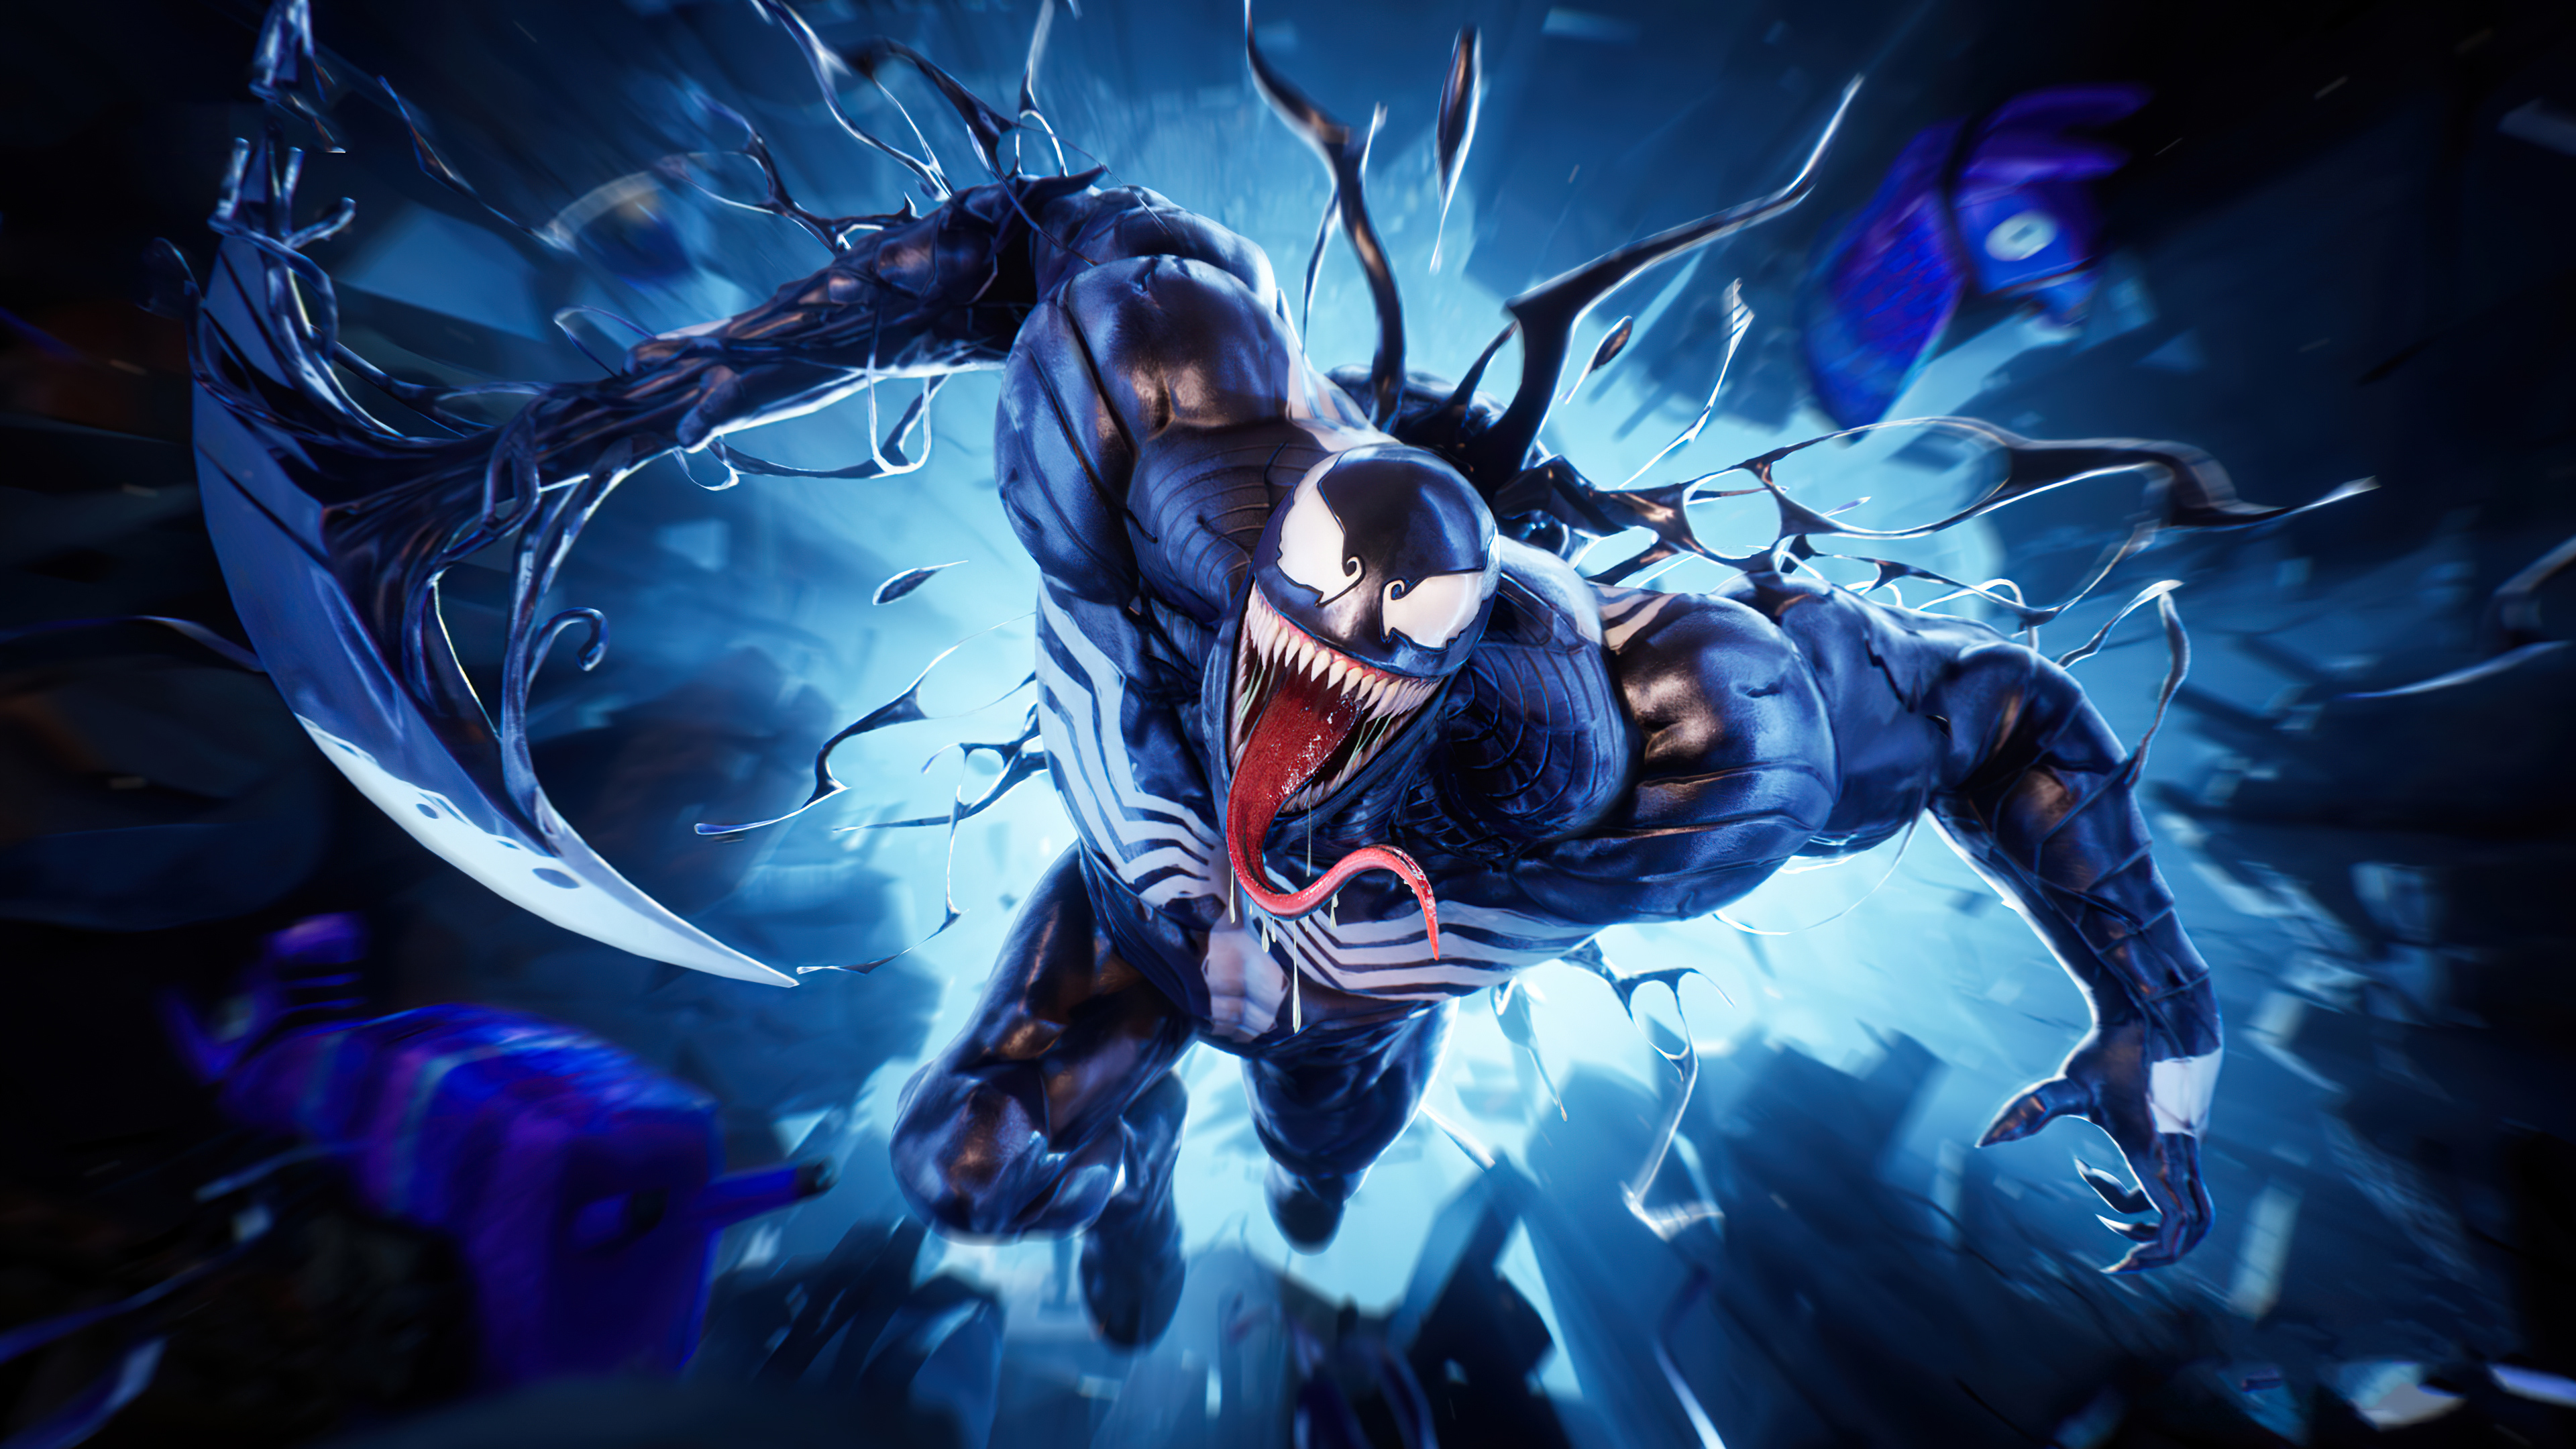 Với keyword Venom Fortnite, bạn sẽ tìm thấy những hình ảnh vô cùng hấp dẫn về Venom trong game Fortnite. Cùng chiêm ngưỡng những bức ảnh đầy thót tim và mạnh mẽ này để có những trải nghiệm tuyệt vời nhất.